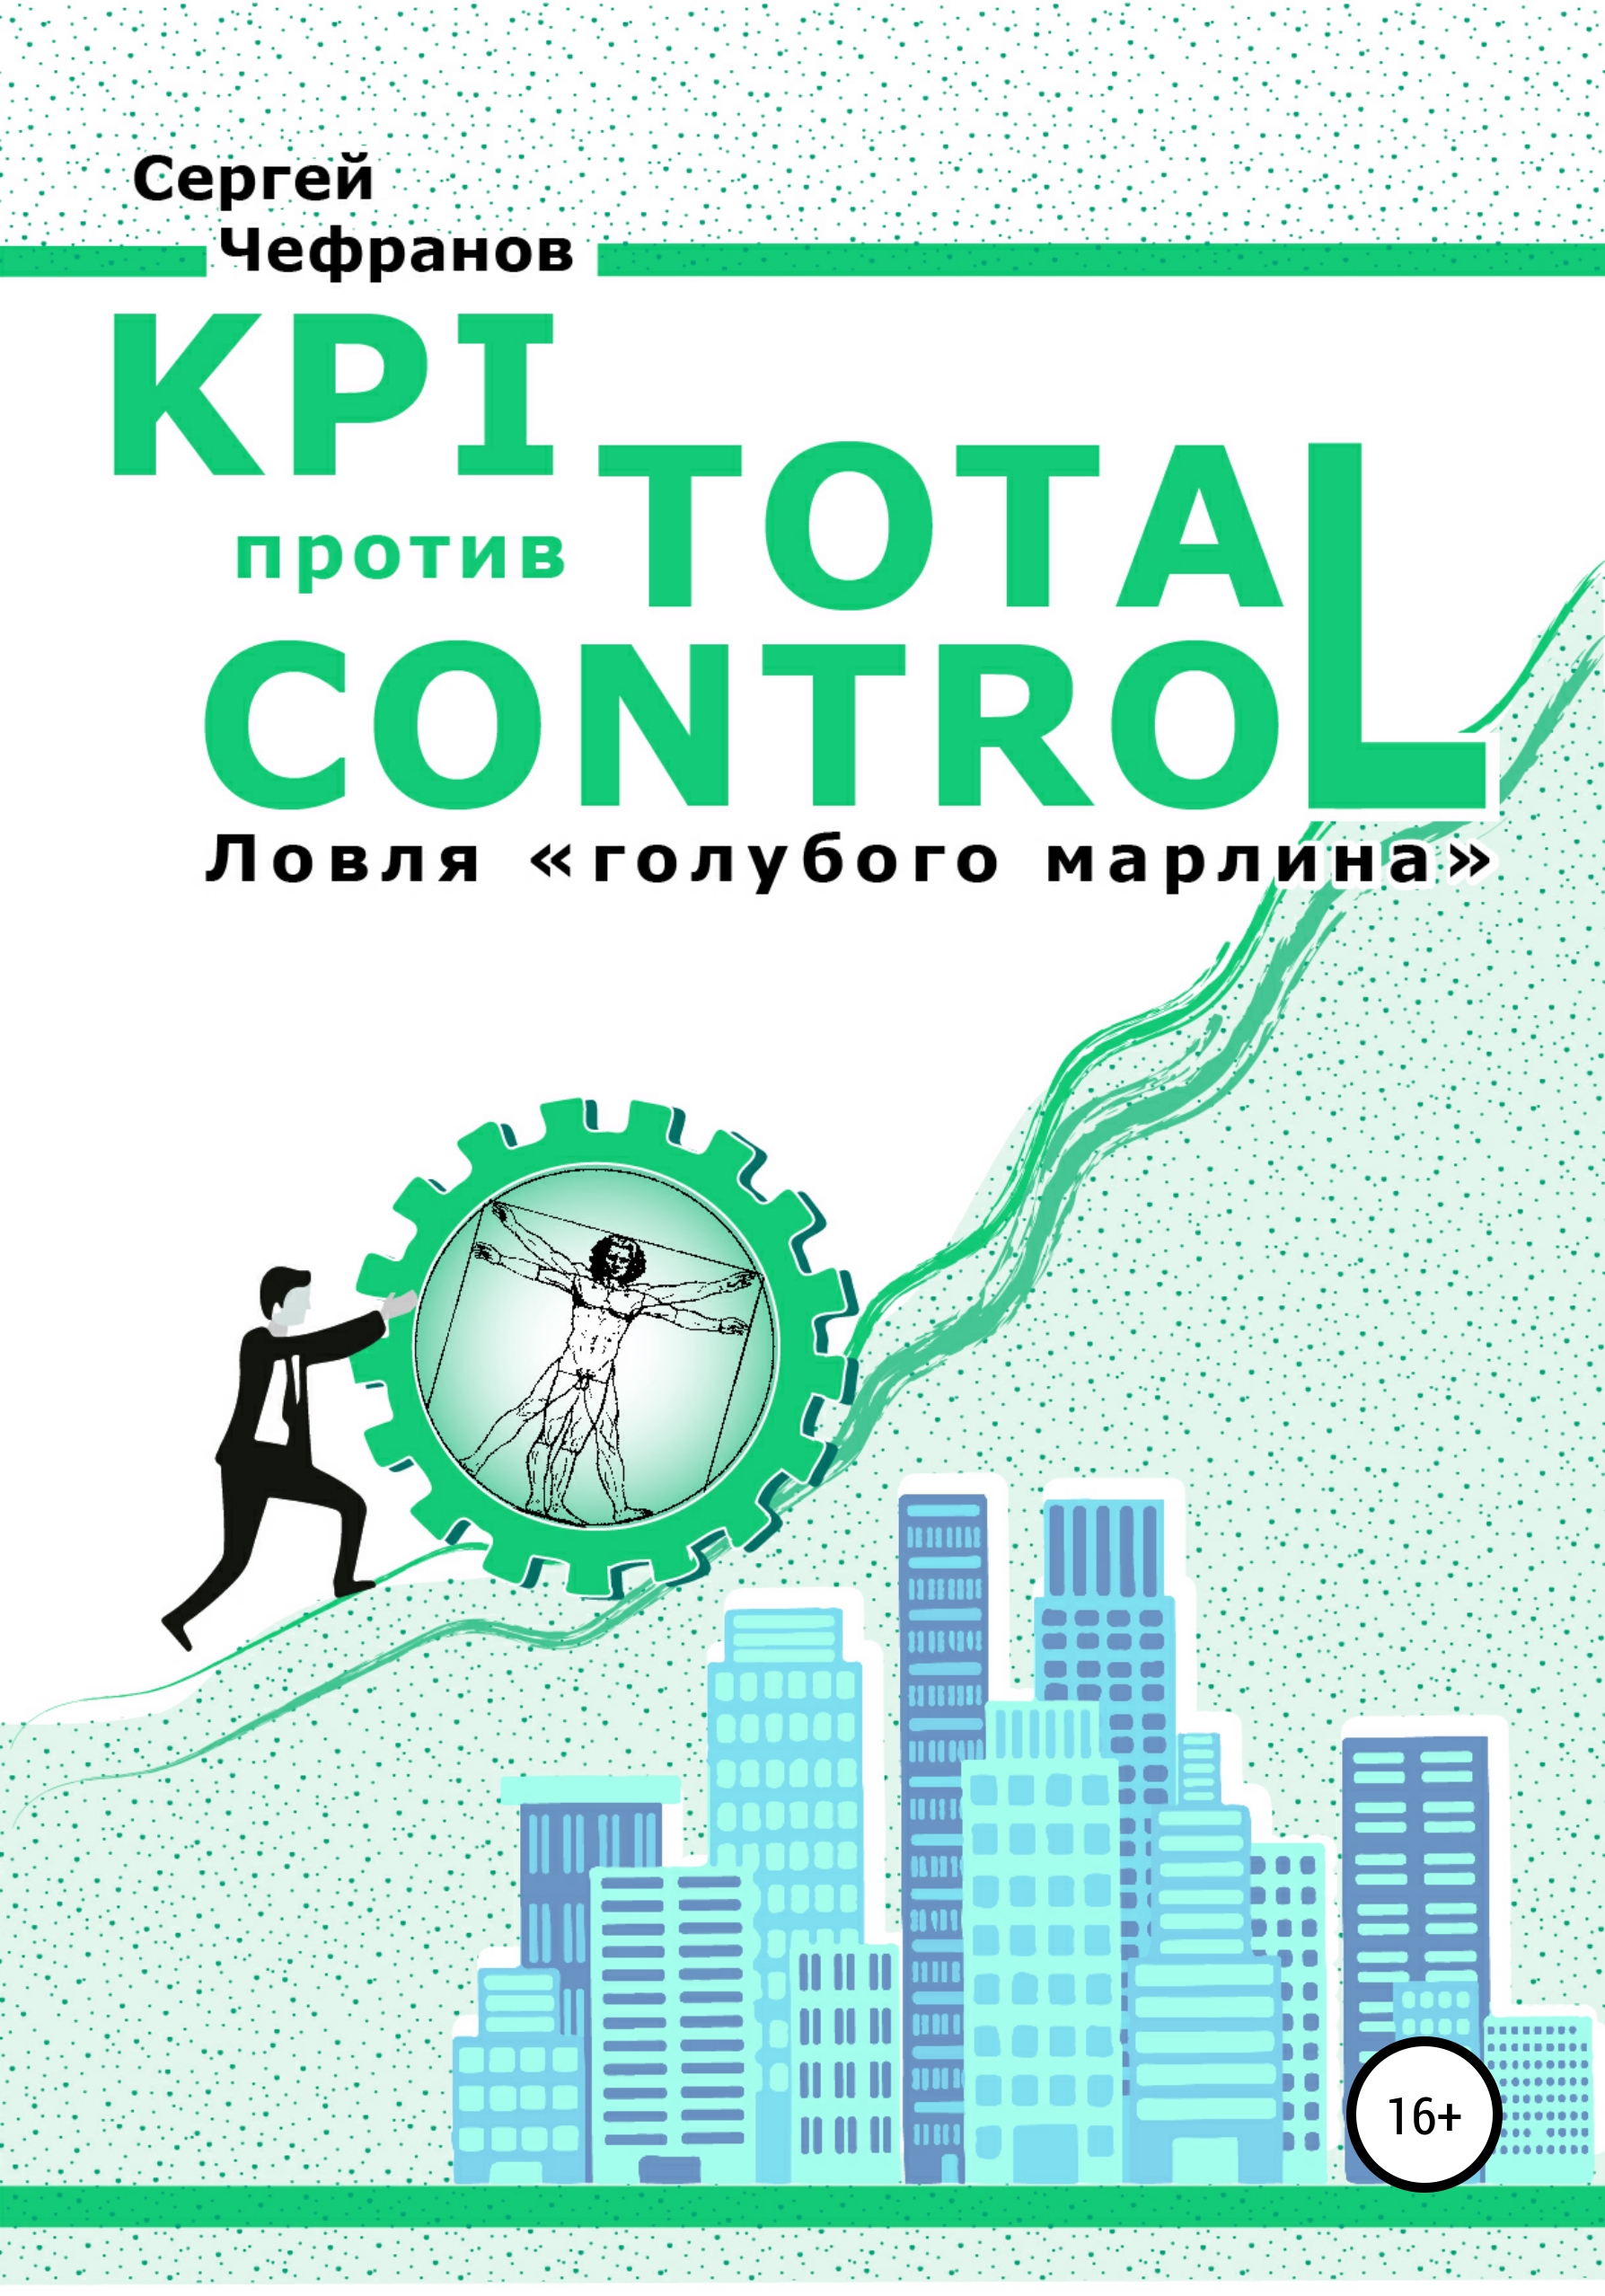 Скачать KPI против TOTAL CONTROL - Сергей Дмитриевич Чефранов